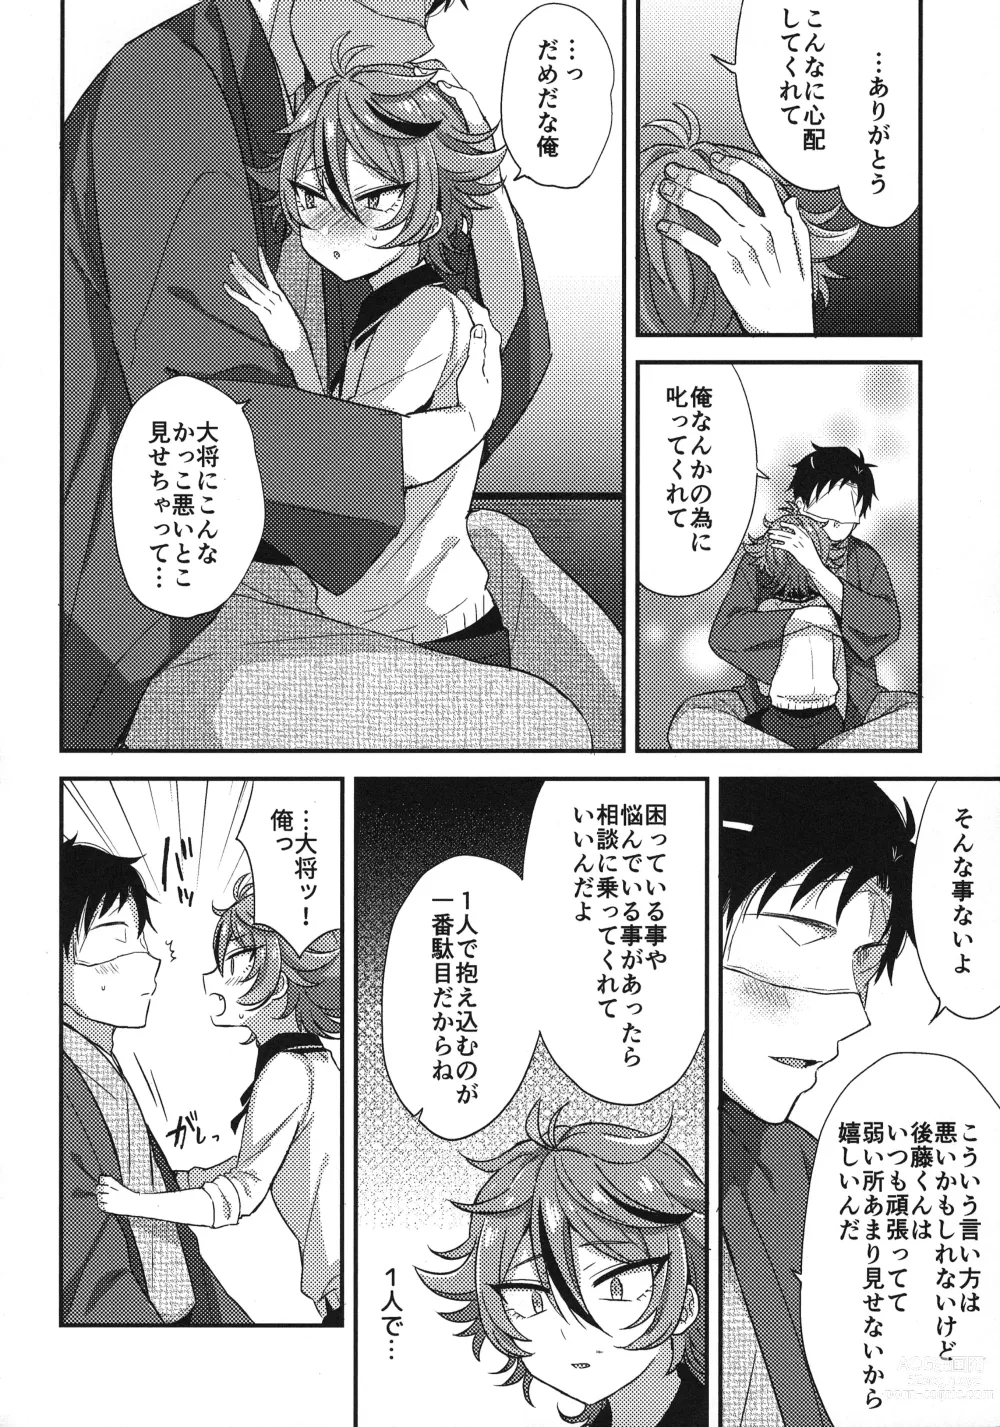 Page 23 of doujinshi Sanigoto Sairoku!